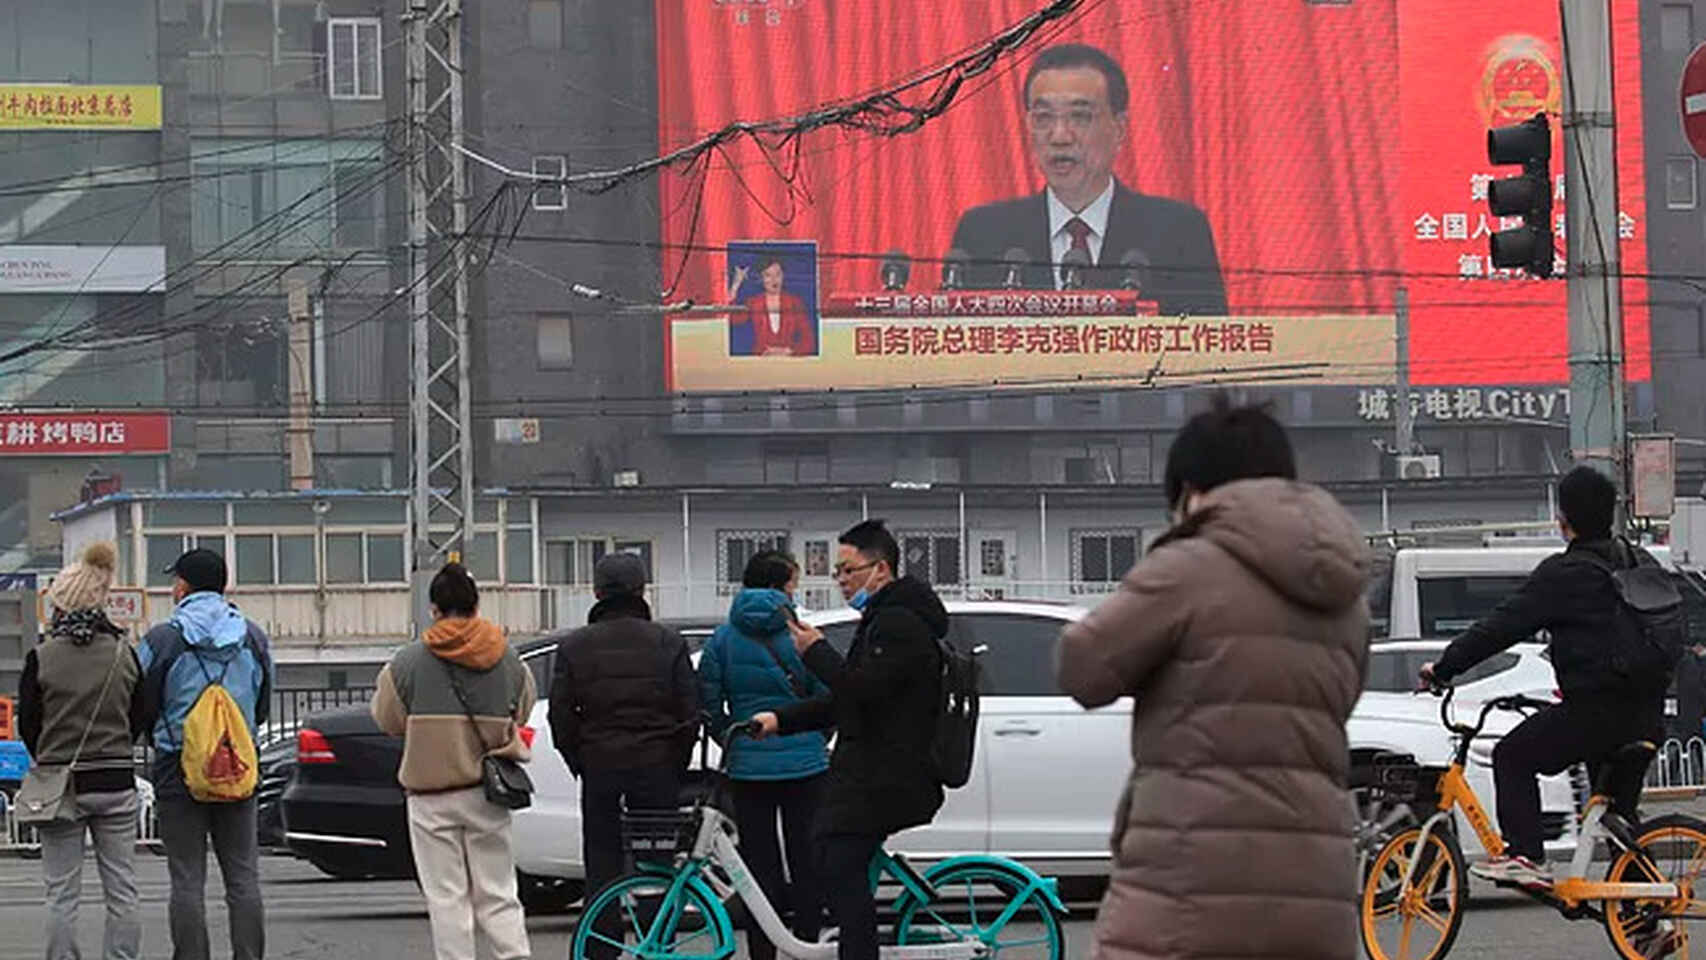 El primer ministro chino, Li Keqiang,  durante uno de sus discursos en una pantalla en Pekín. Efe